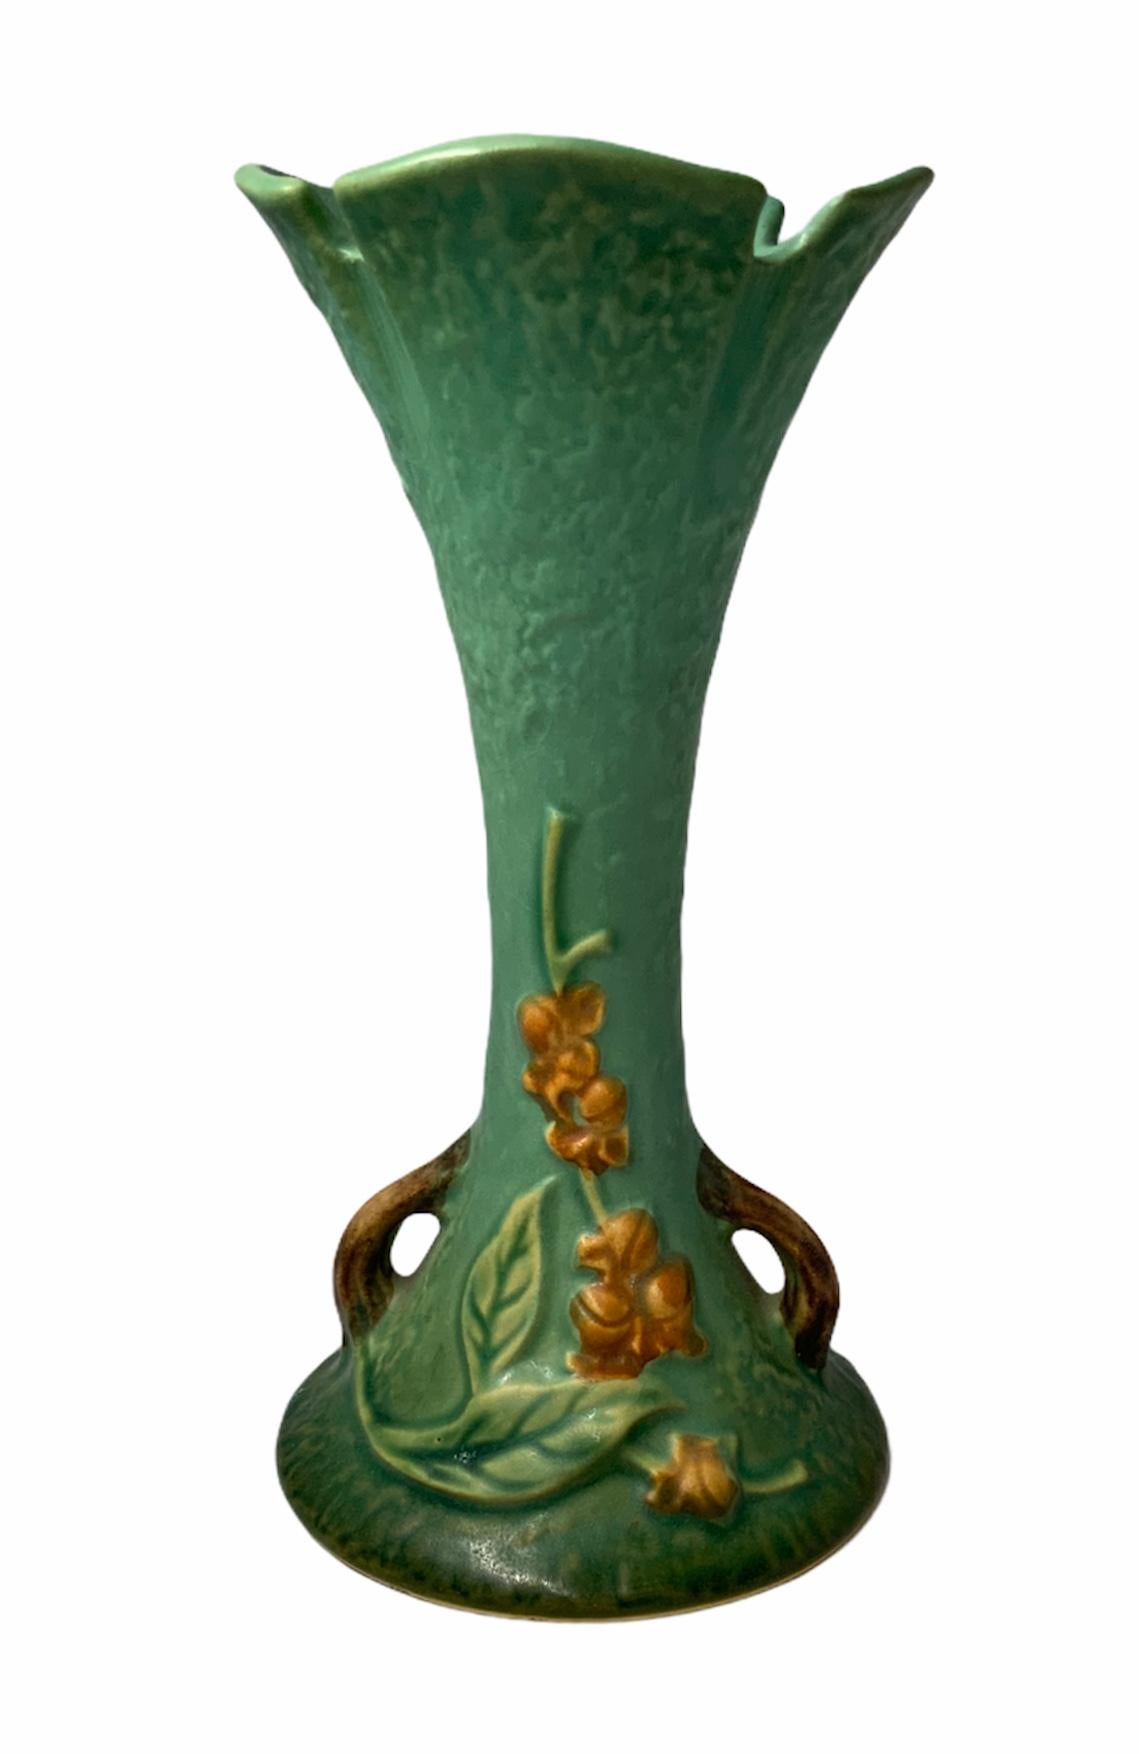 Clay Roseville Pottery Bittersweet Flower Vase